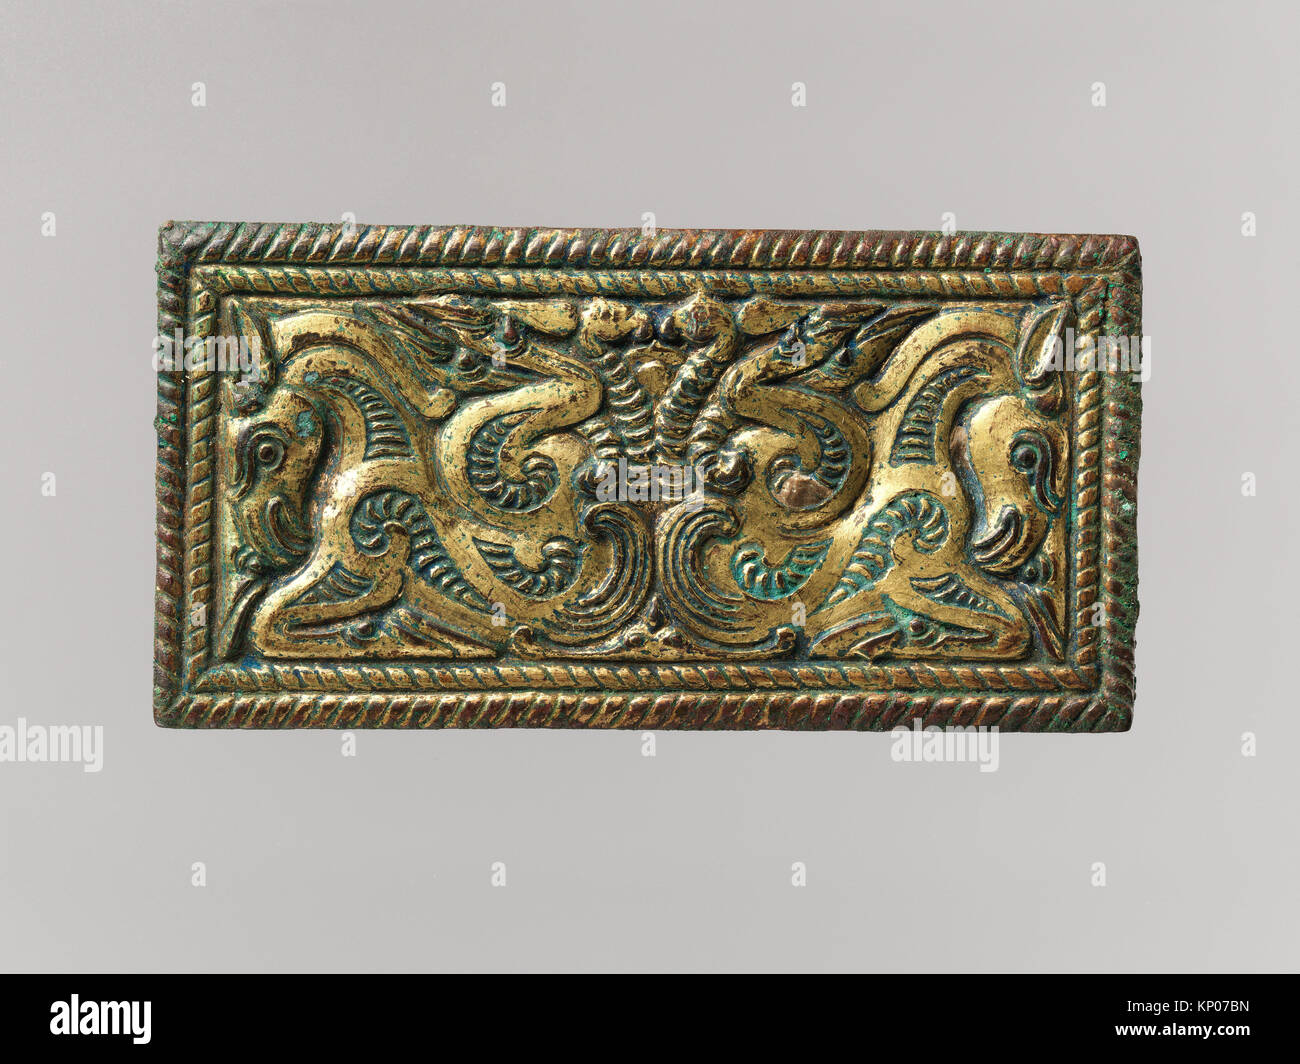 La boucle de ceinture de sécurité avec les ongulés à bec. Date : 2ème  siècle avant J.C, Culture : le nord de la Chine ; moyen : bronze doré ;  Dimensions :